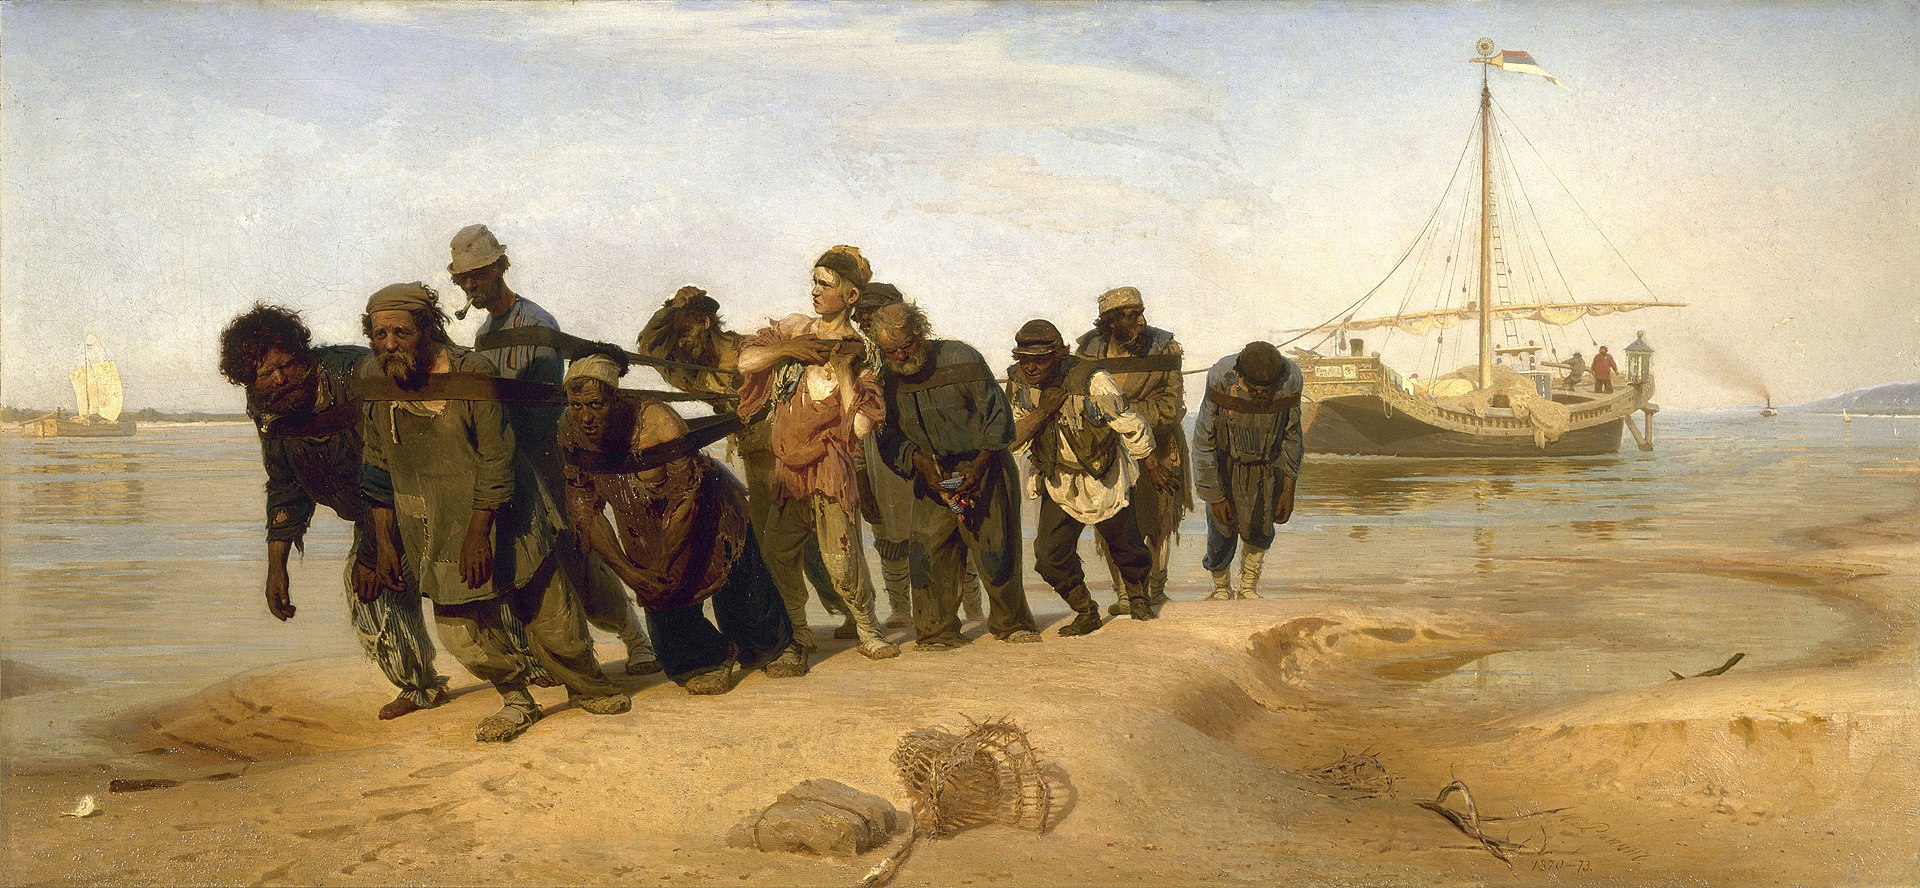 Бурлаки на Волге (Die Wolgatreidler, 1870-1873) von Ilja Jefimowitsch Repin (1844-1930). Bild: cc gemeinfrei